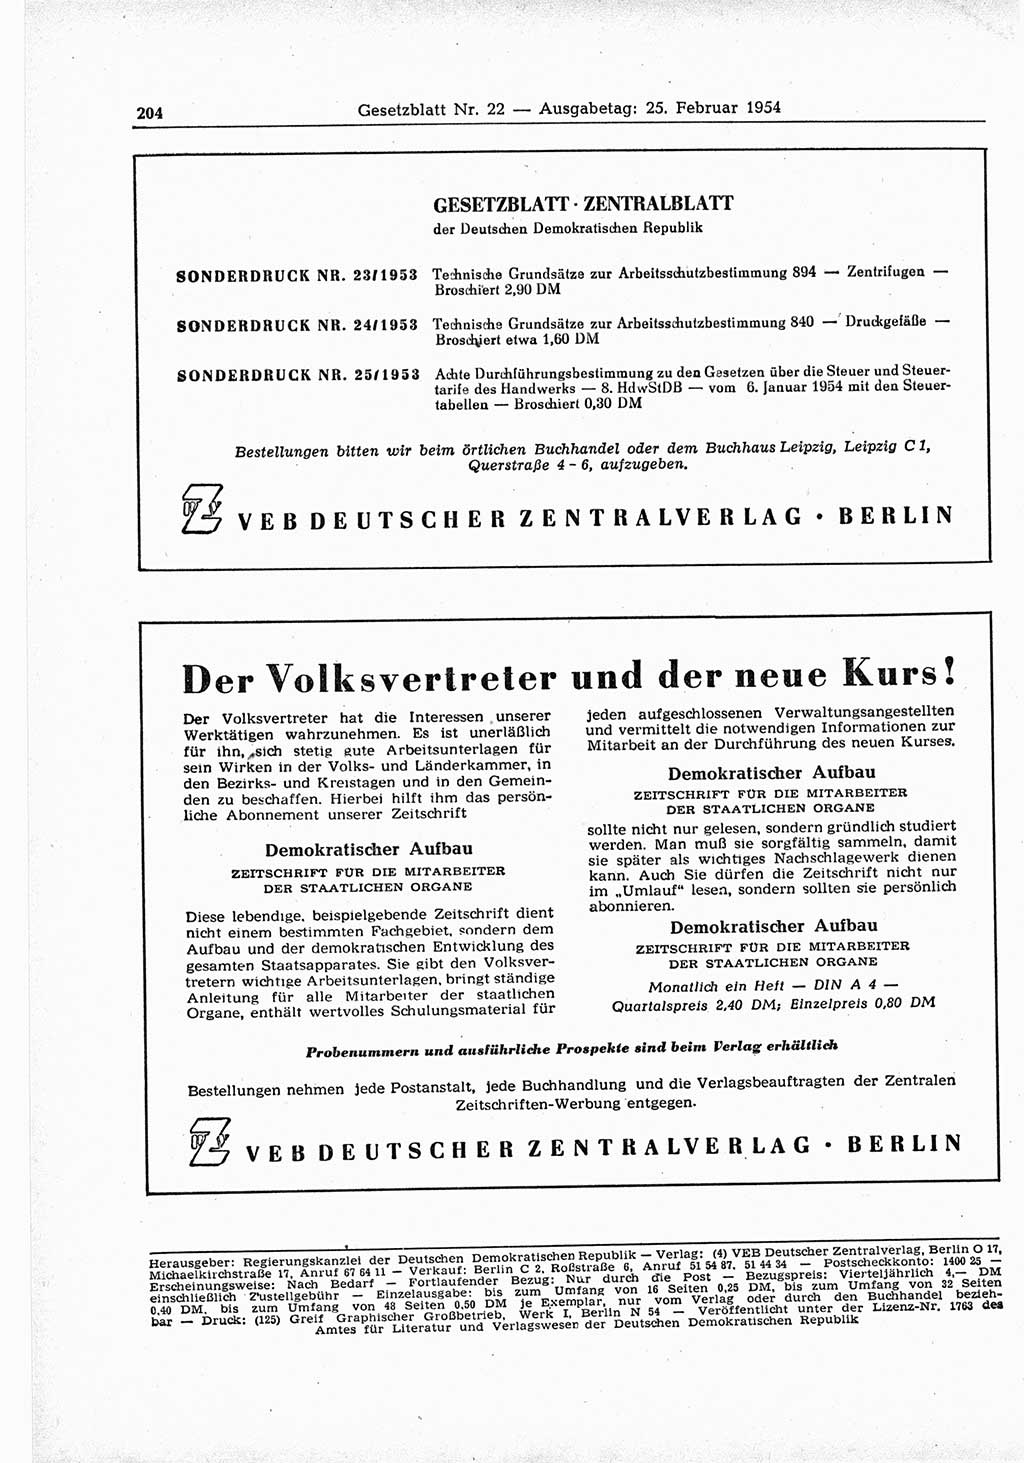 Gesetzblatt (GBl.) der Deutschen Demokratischen Republik (DDR) 1954, Seite 204 (GBl. DDR 1954, S. 204)